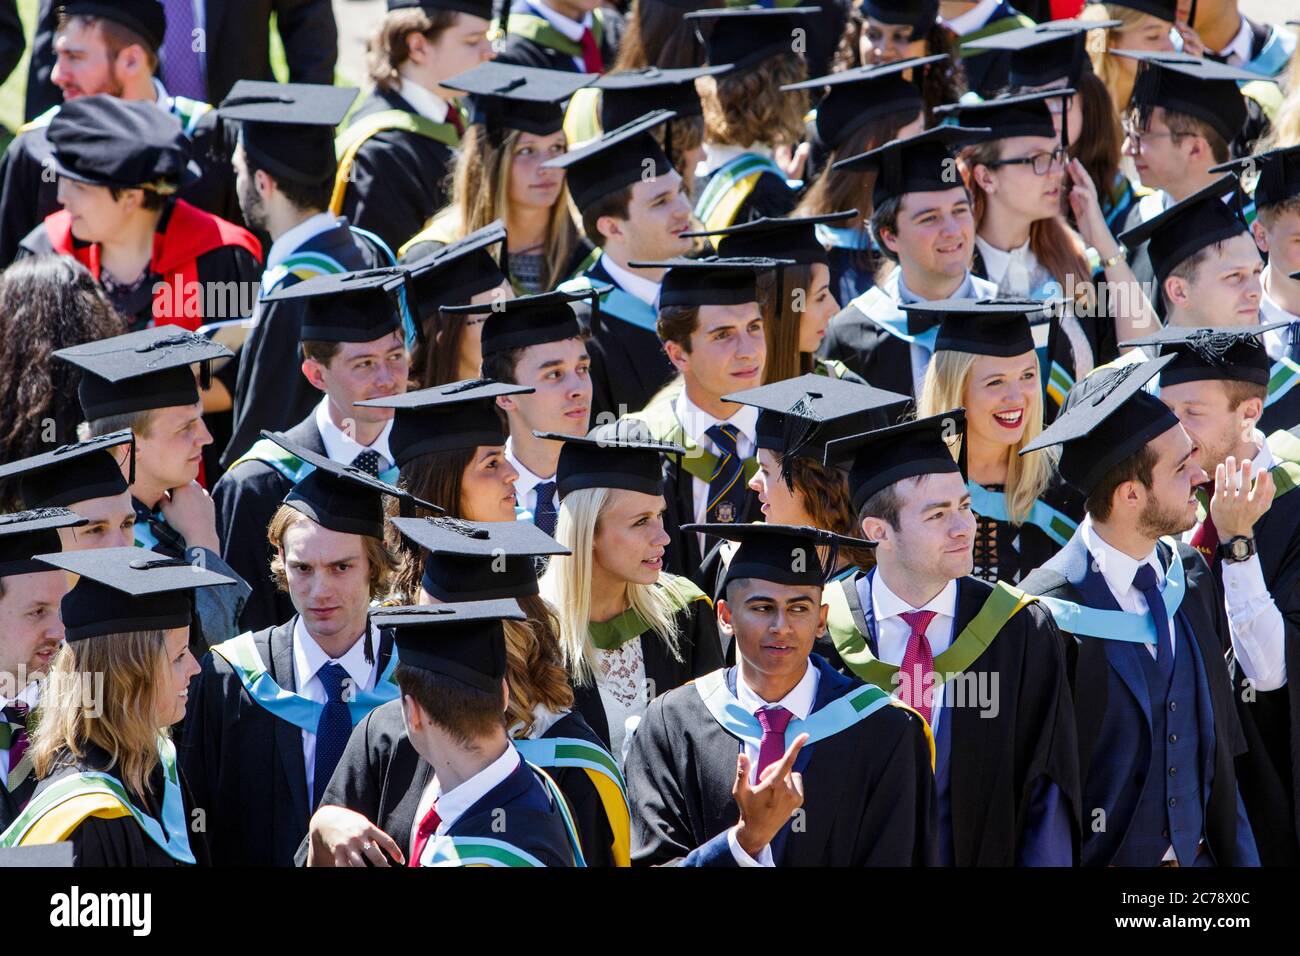 Los estudiantes de la Universidad de Bath en la ceremonia de graduación de sus estudiantes son fotografiados mientras esperan a que se les tome la fotografía de graduación. 5 de julio de 2017. Foto de stock